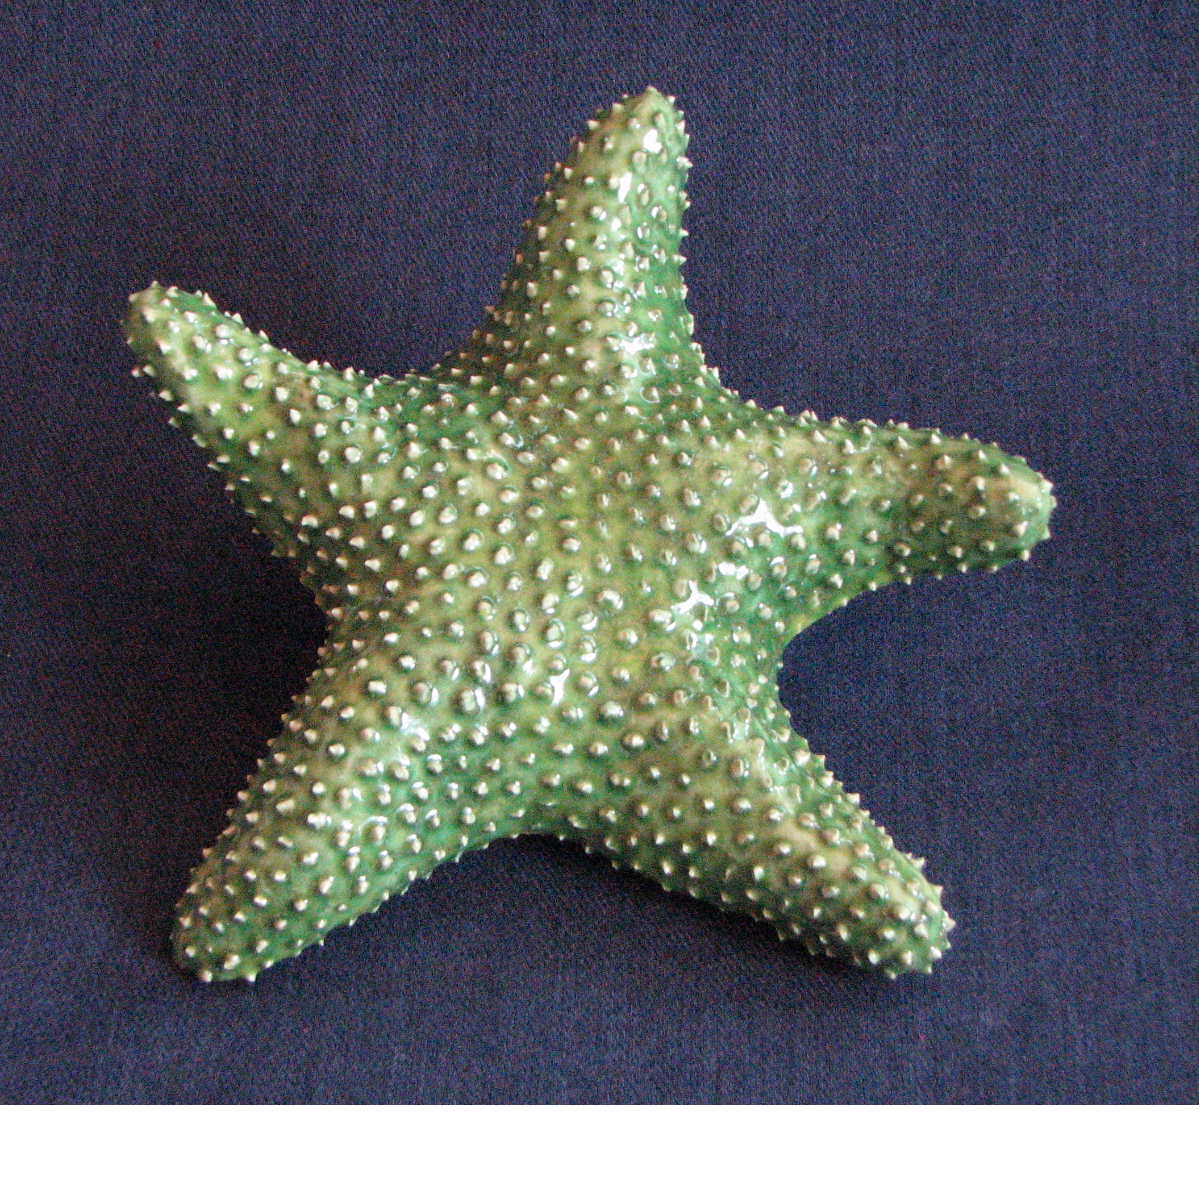 [starfish.Mike.30.JPG]